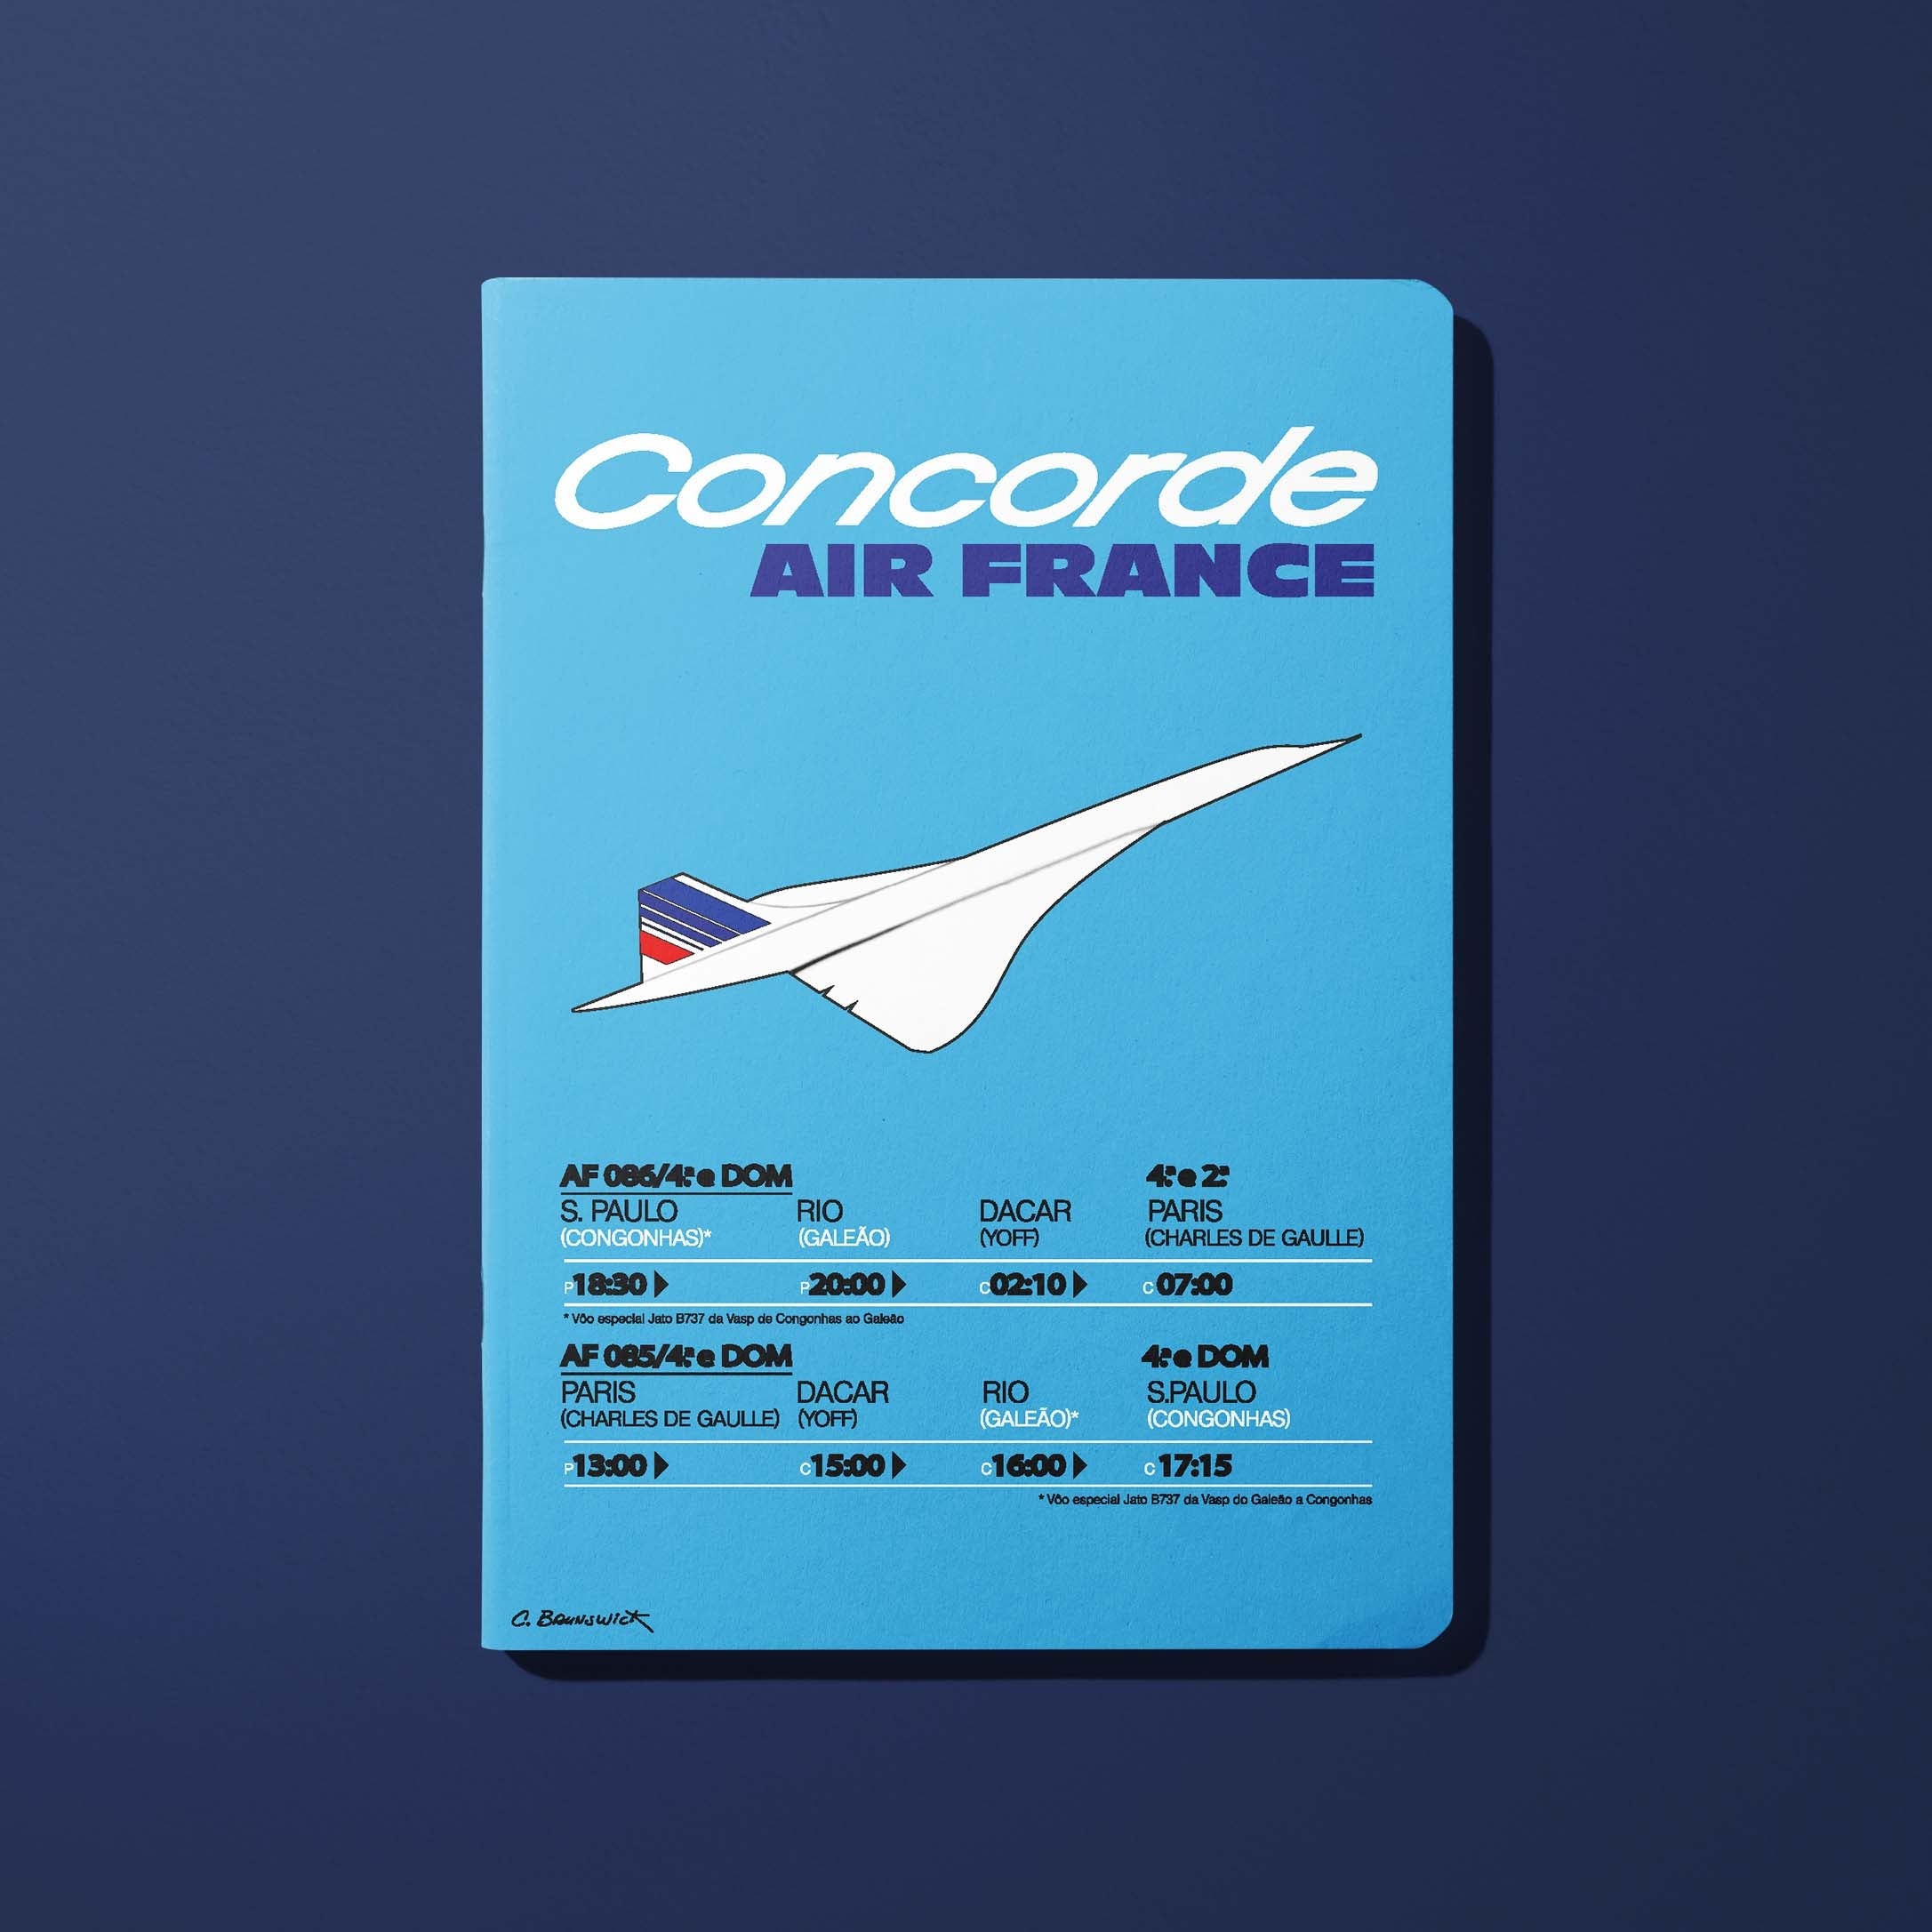 Carnet Air France Legend Concorde Timeline